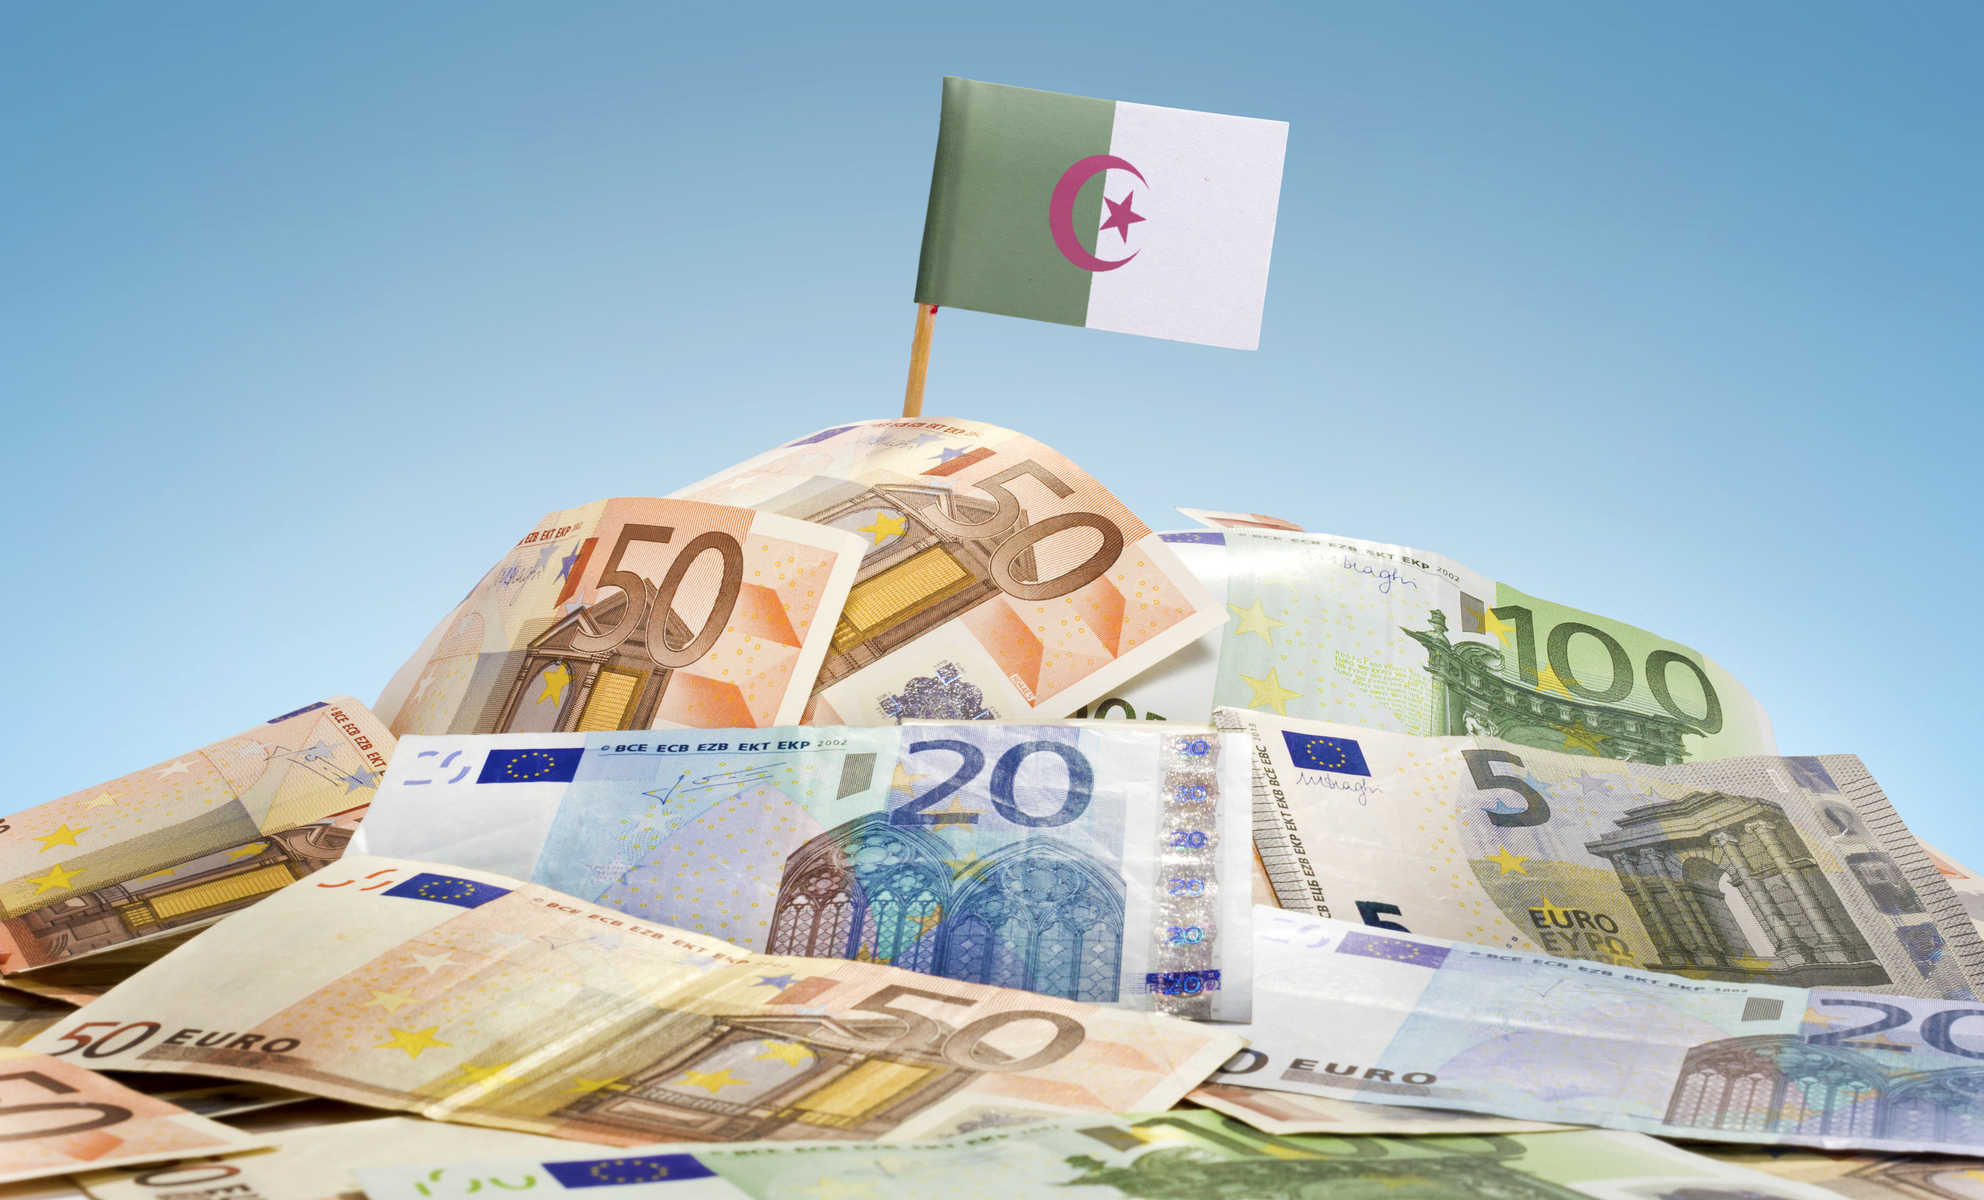 خبر سيٌفرح كثيرين في الجزائر ممن يكسبون الأموال بالأورو و الدولار من خلال الانترنت